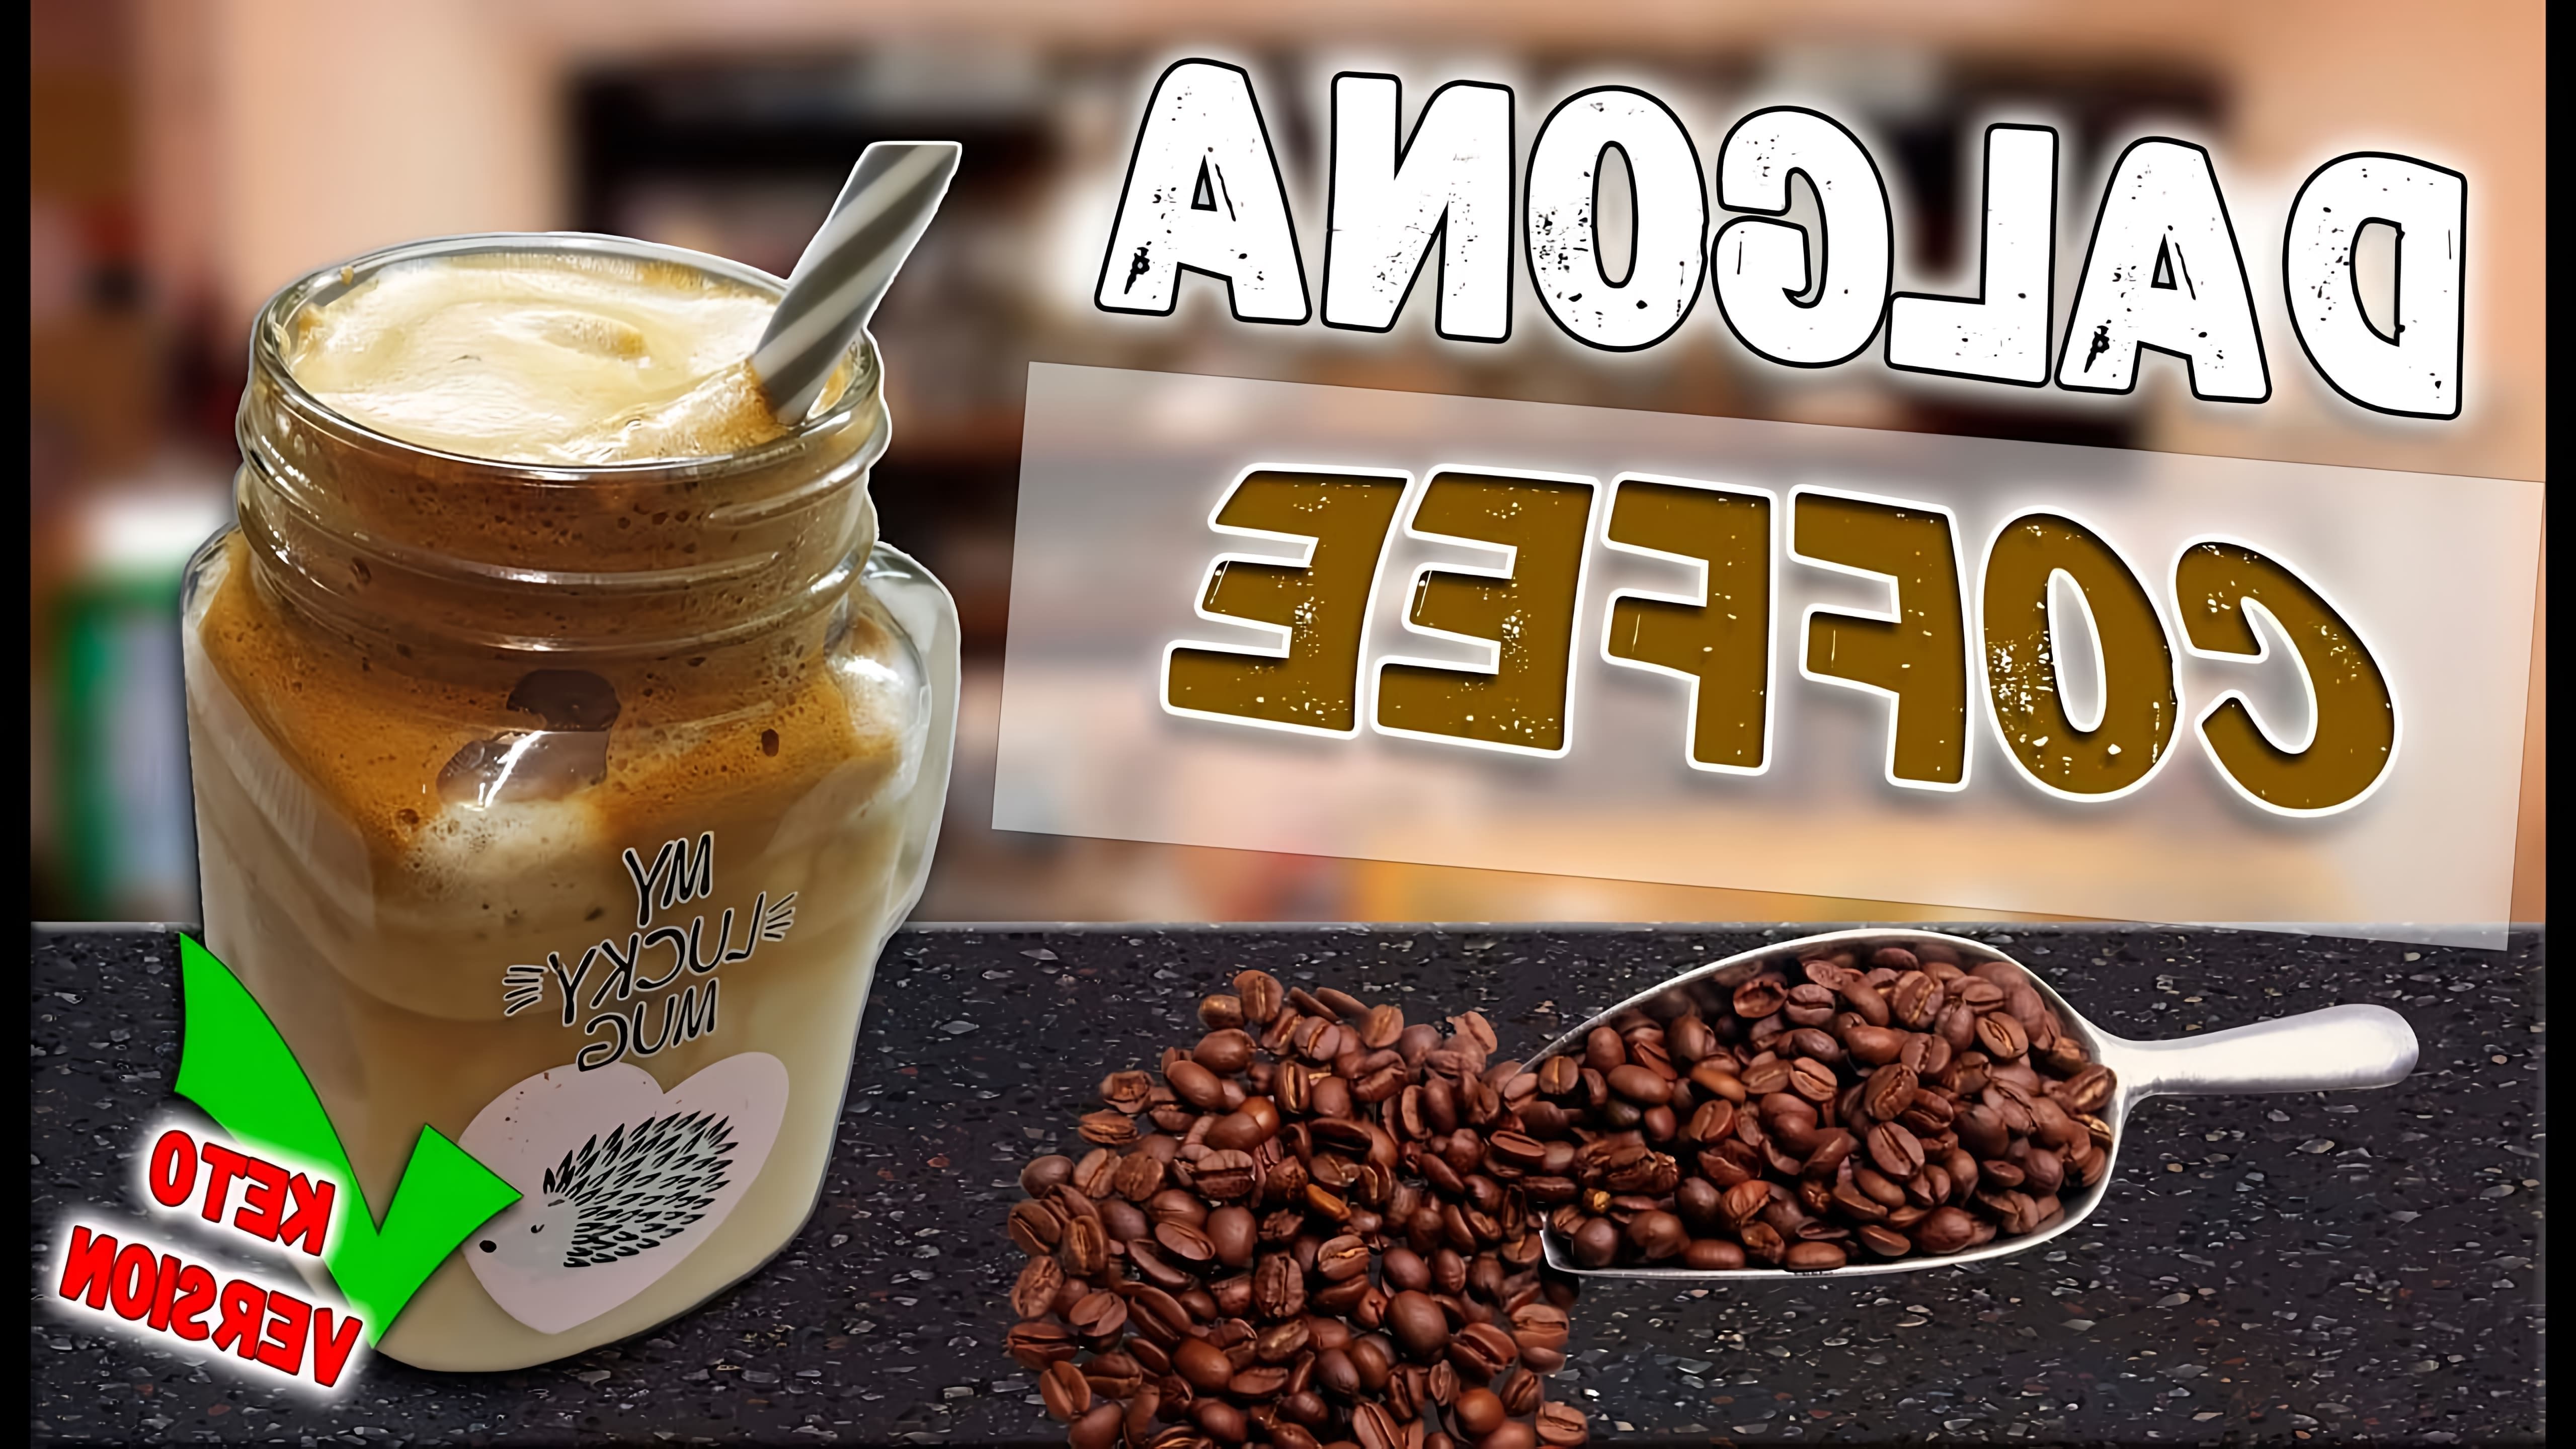 В этом видео демонстрируется рецепт приготовления кофейного напитка Дальгона на кето-манер